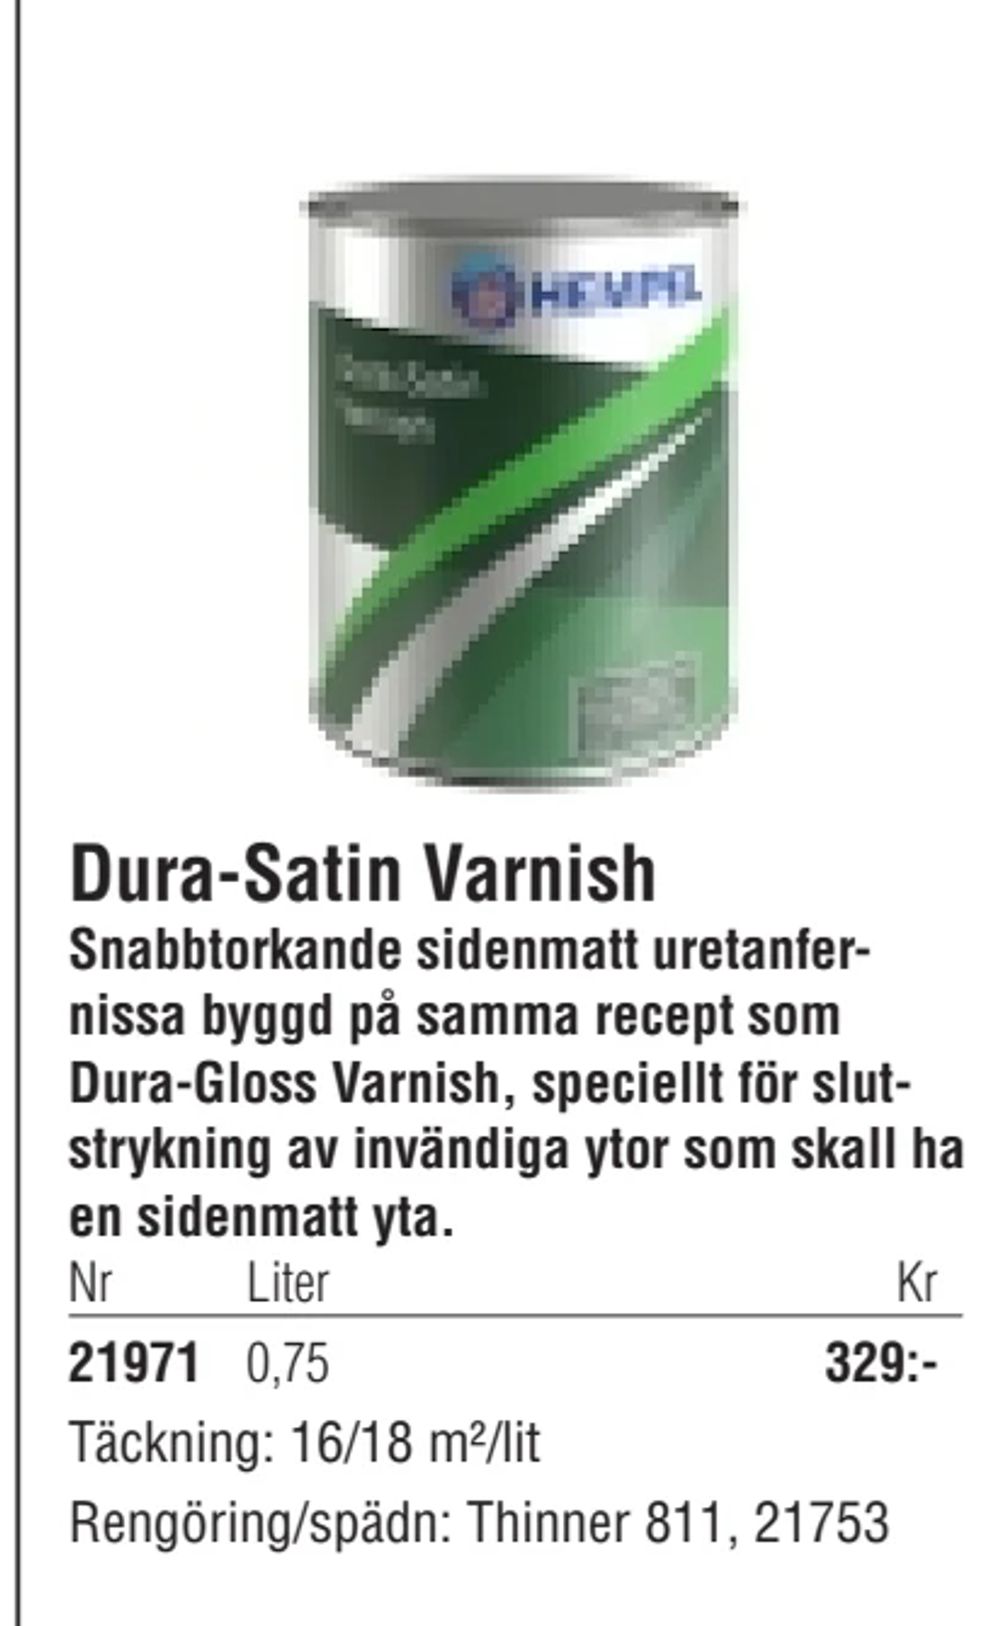 Erbjudanden på Dura-Satin Varnish från Erlandsons Brygga för 329 kr